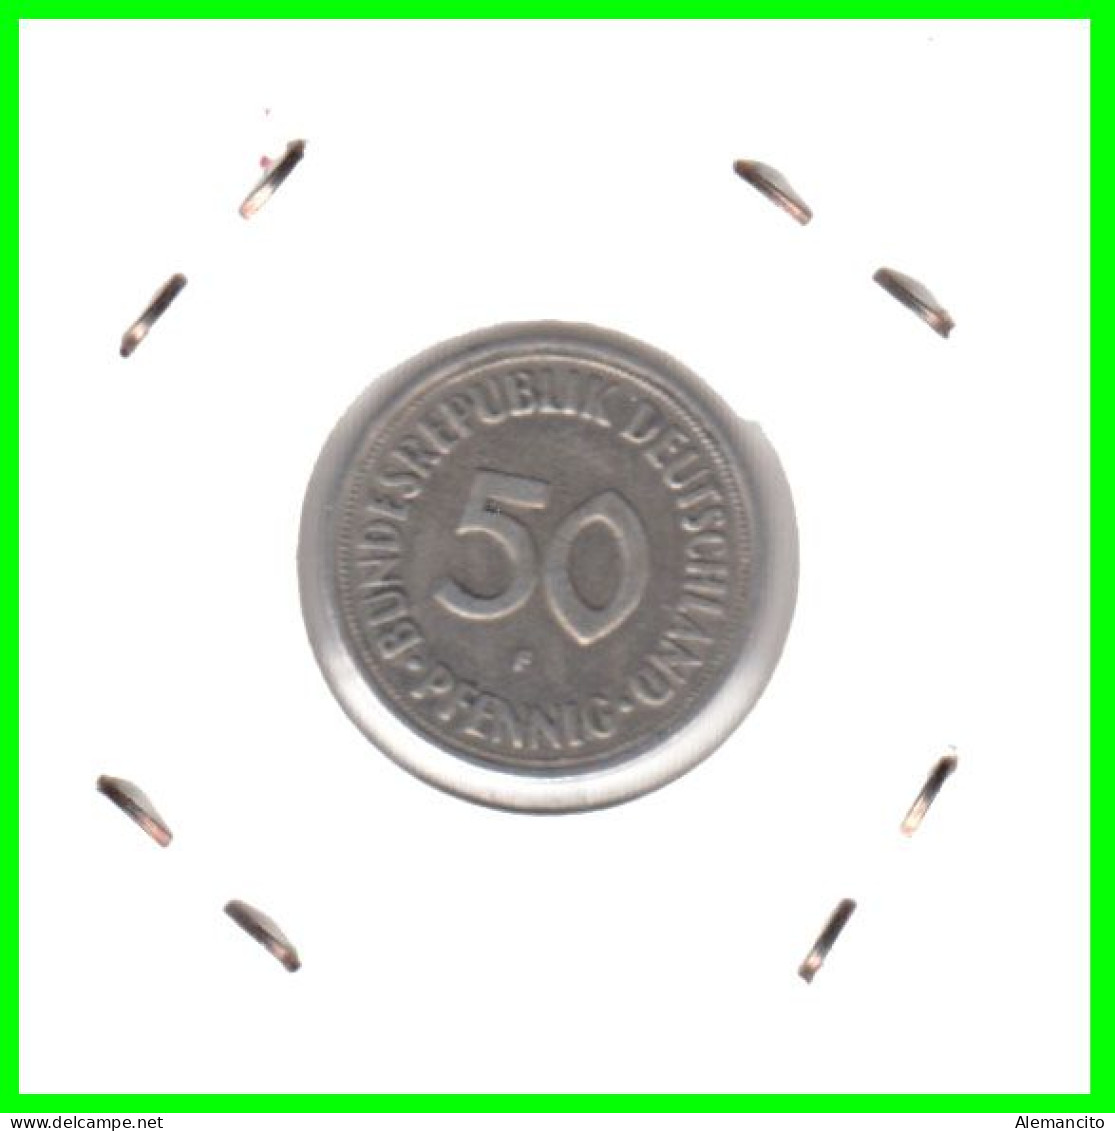 ALEMANIA -DEUTSCHLAND - GERMANY-MONEDA DE LA REPUBLICA FEDERAL DE ALEMANIA DE 50 Pfn-DEL AÑO - 1950 CECA - F - STUTTGART - 50 Pfennig